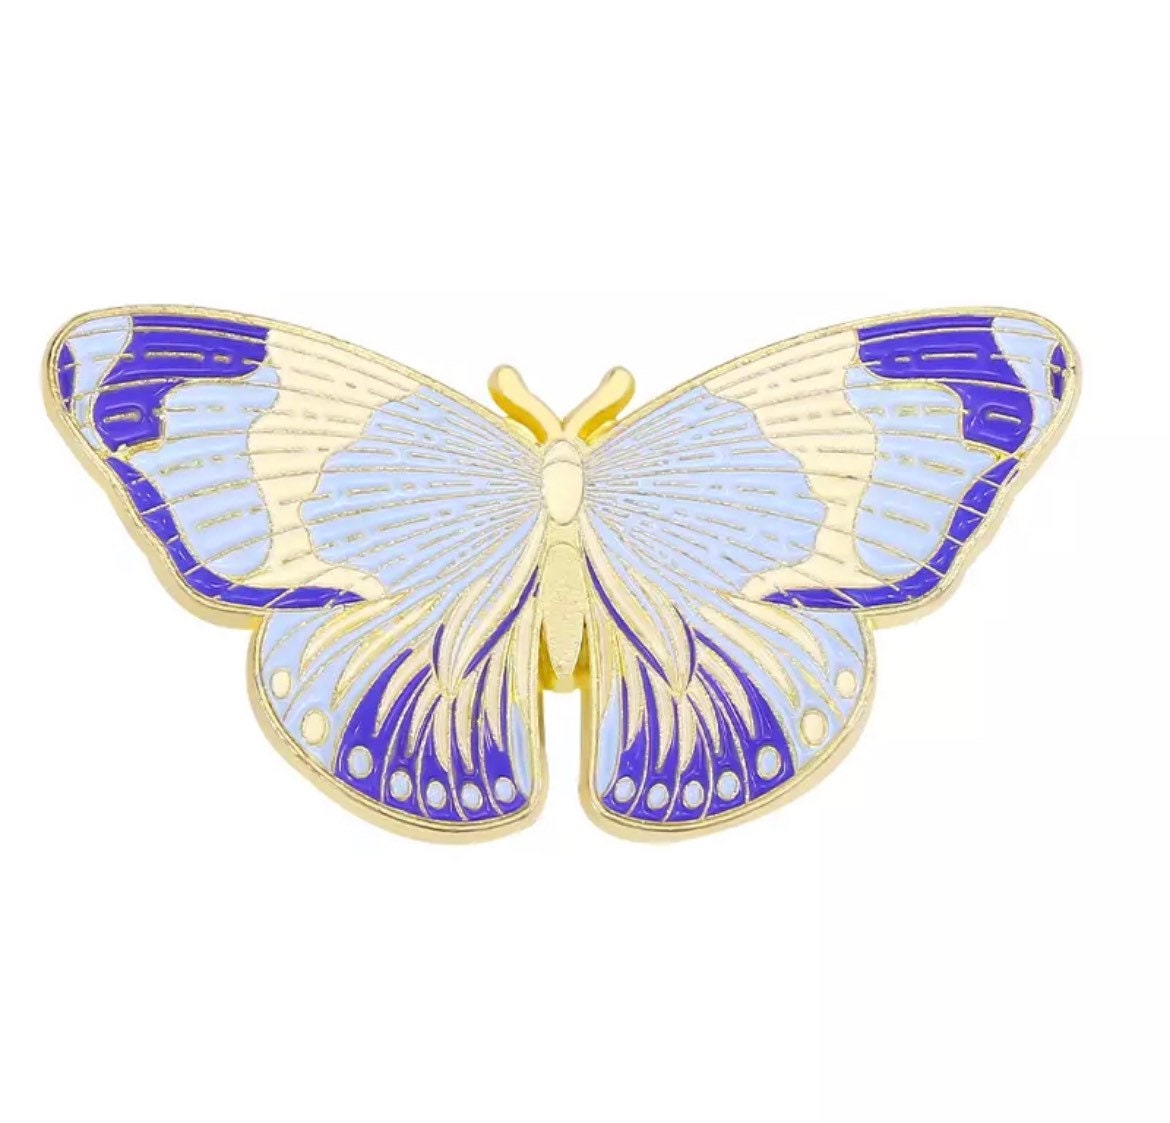 Butterfly blue enamel pin badge